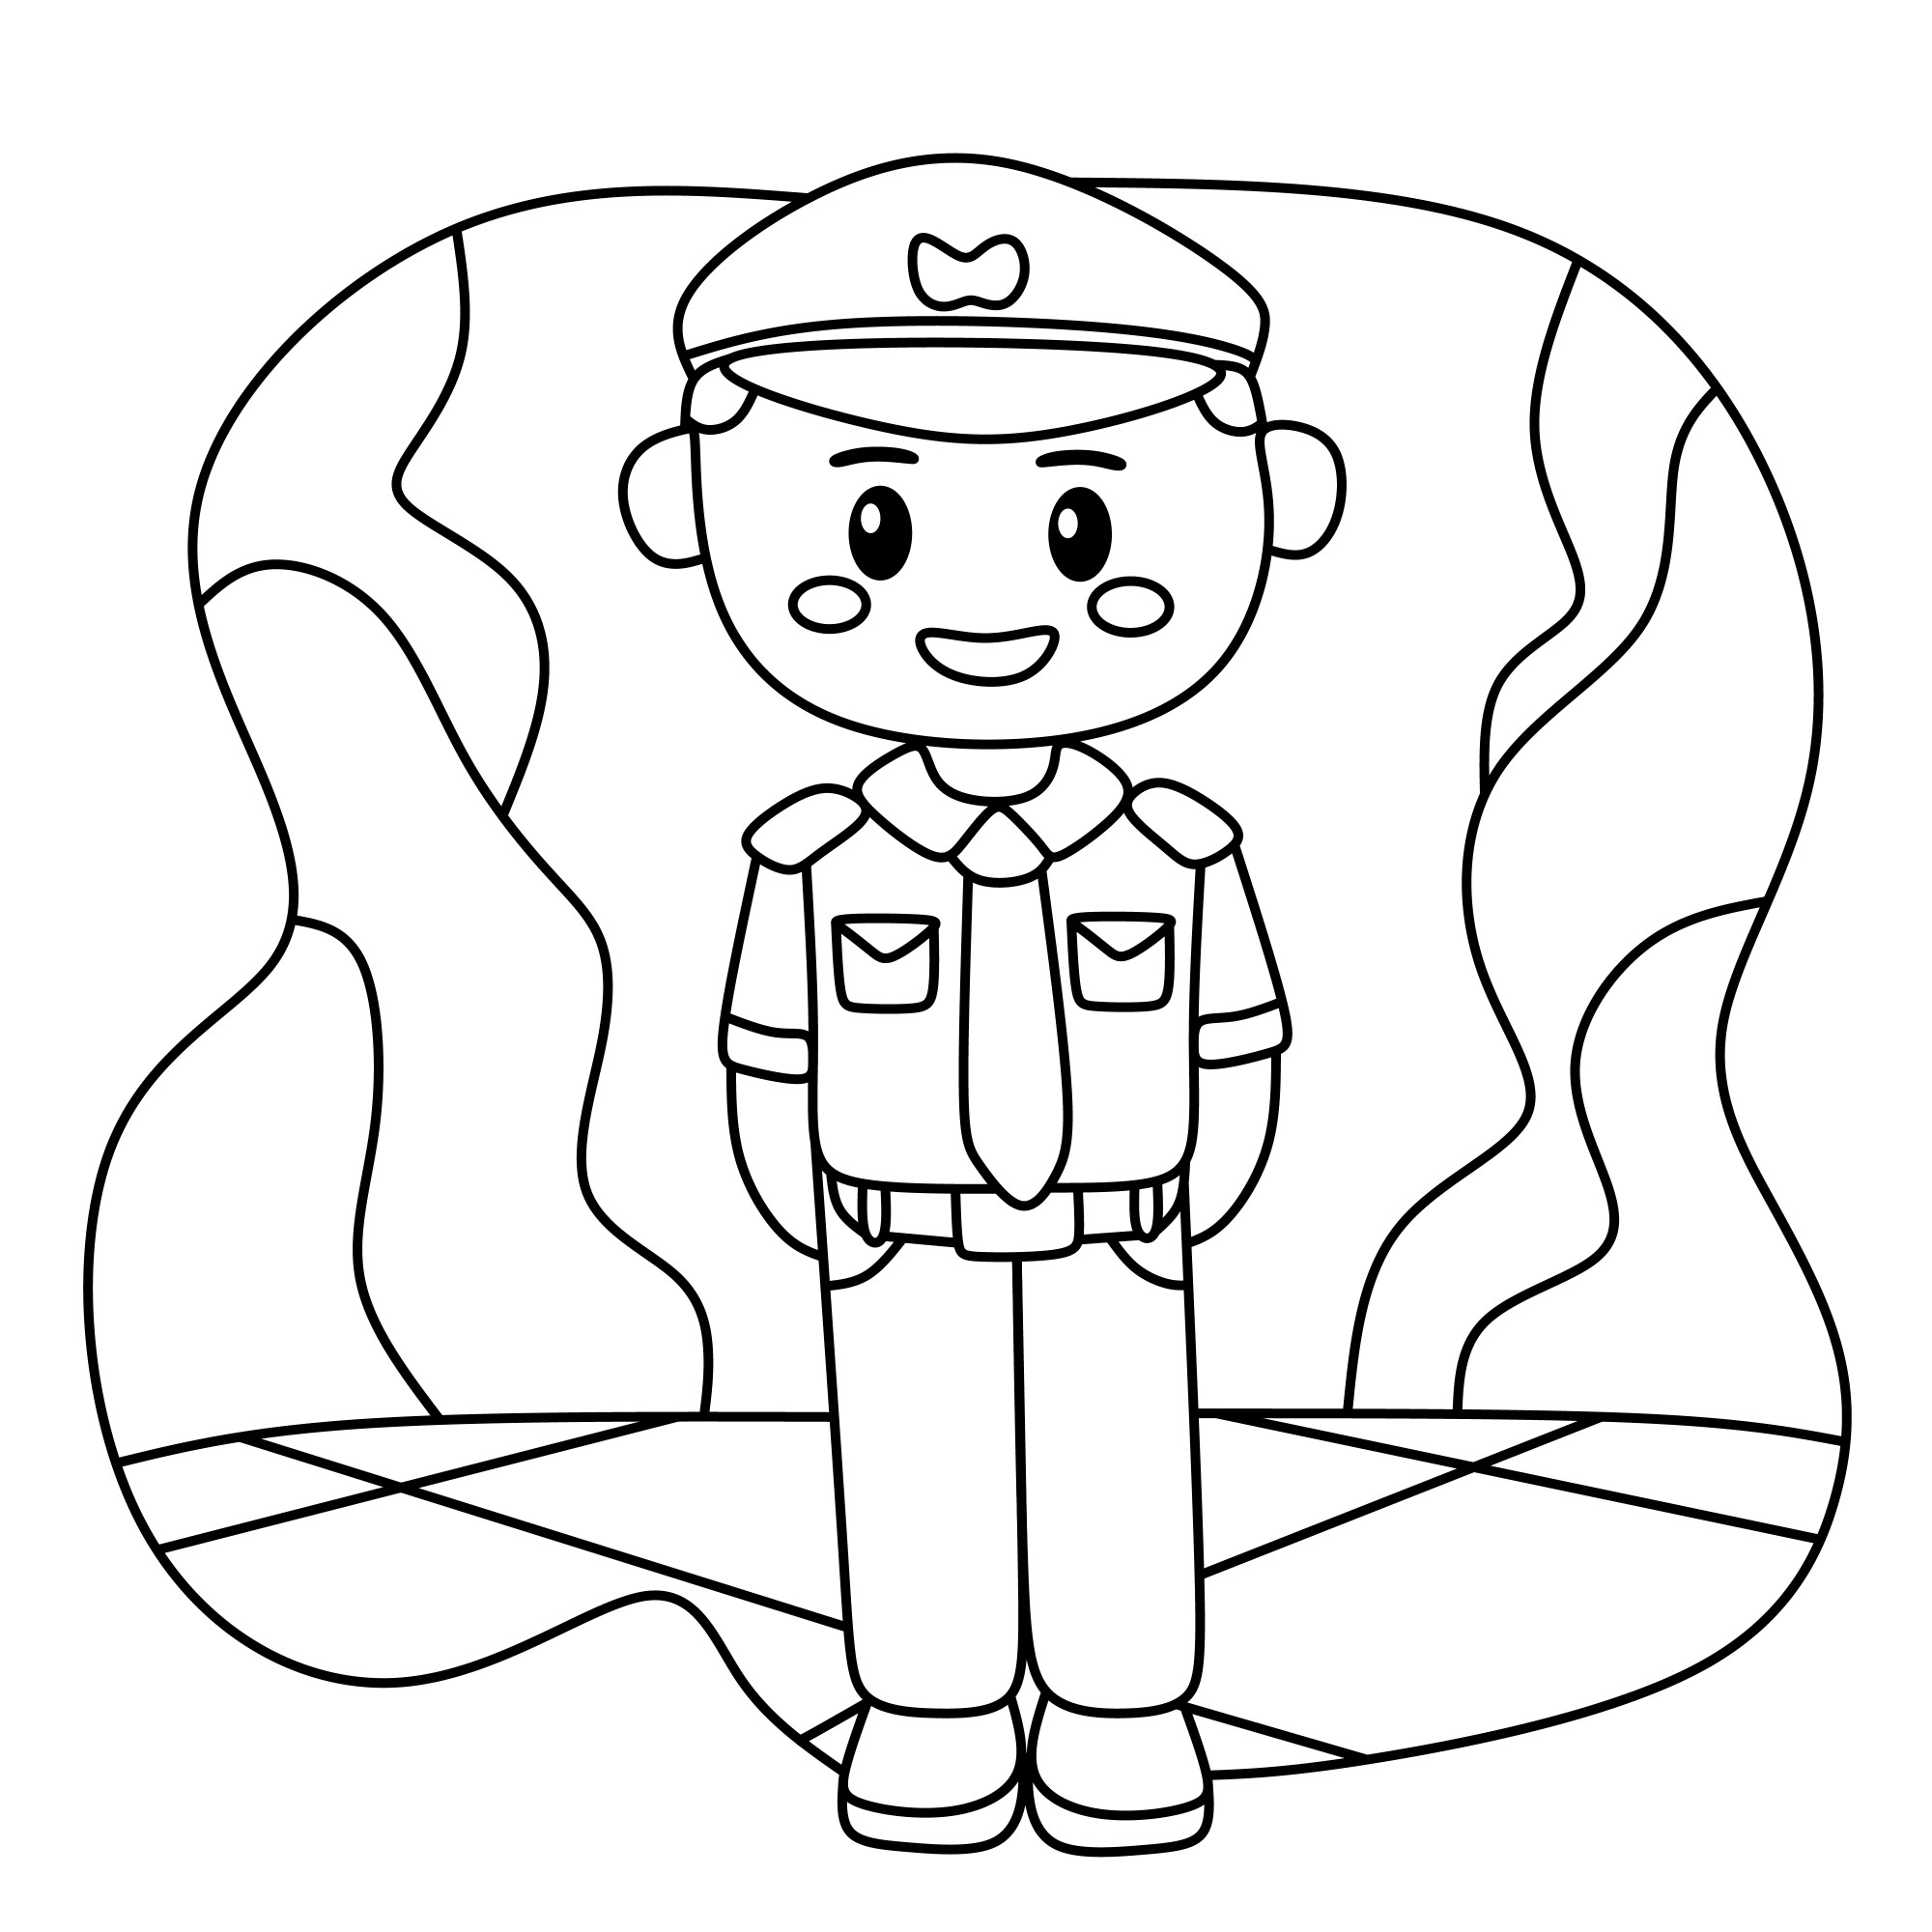 Раскраска для детей: сотрудник полиции в галстуке